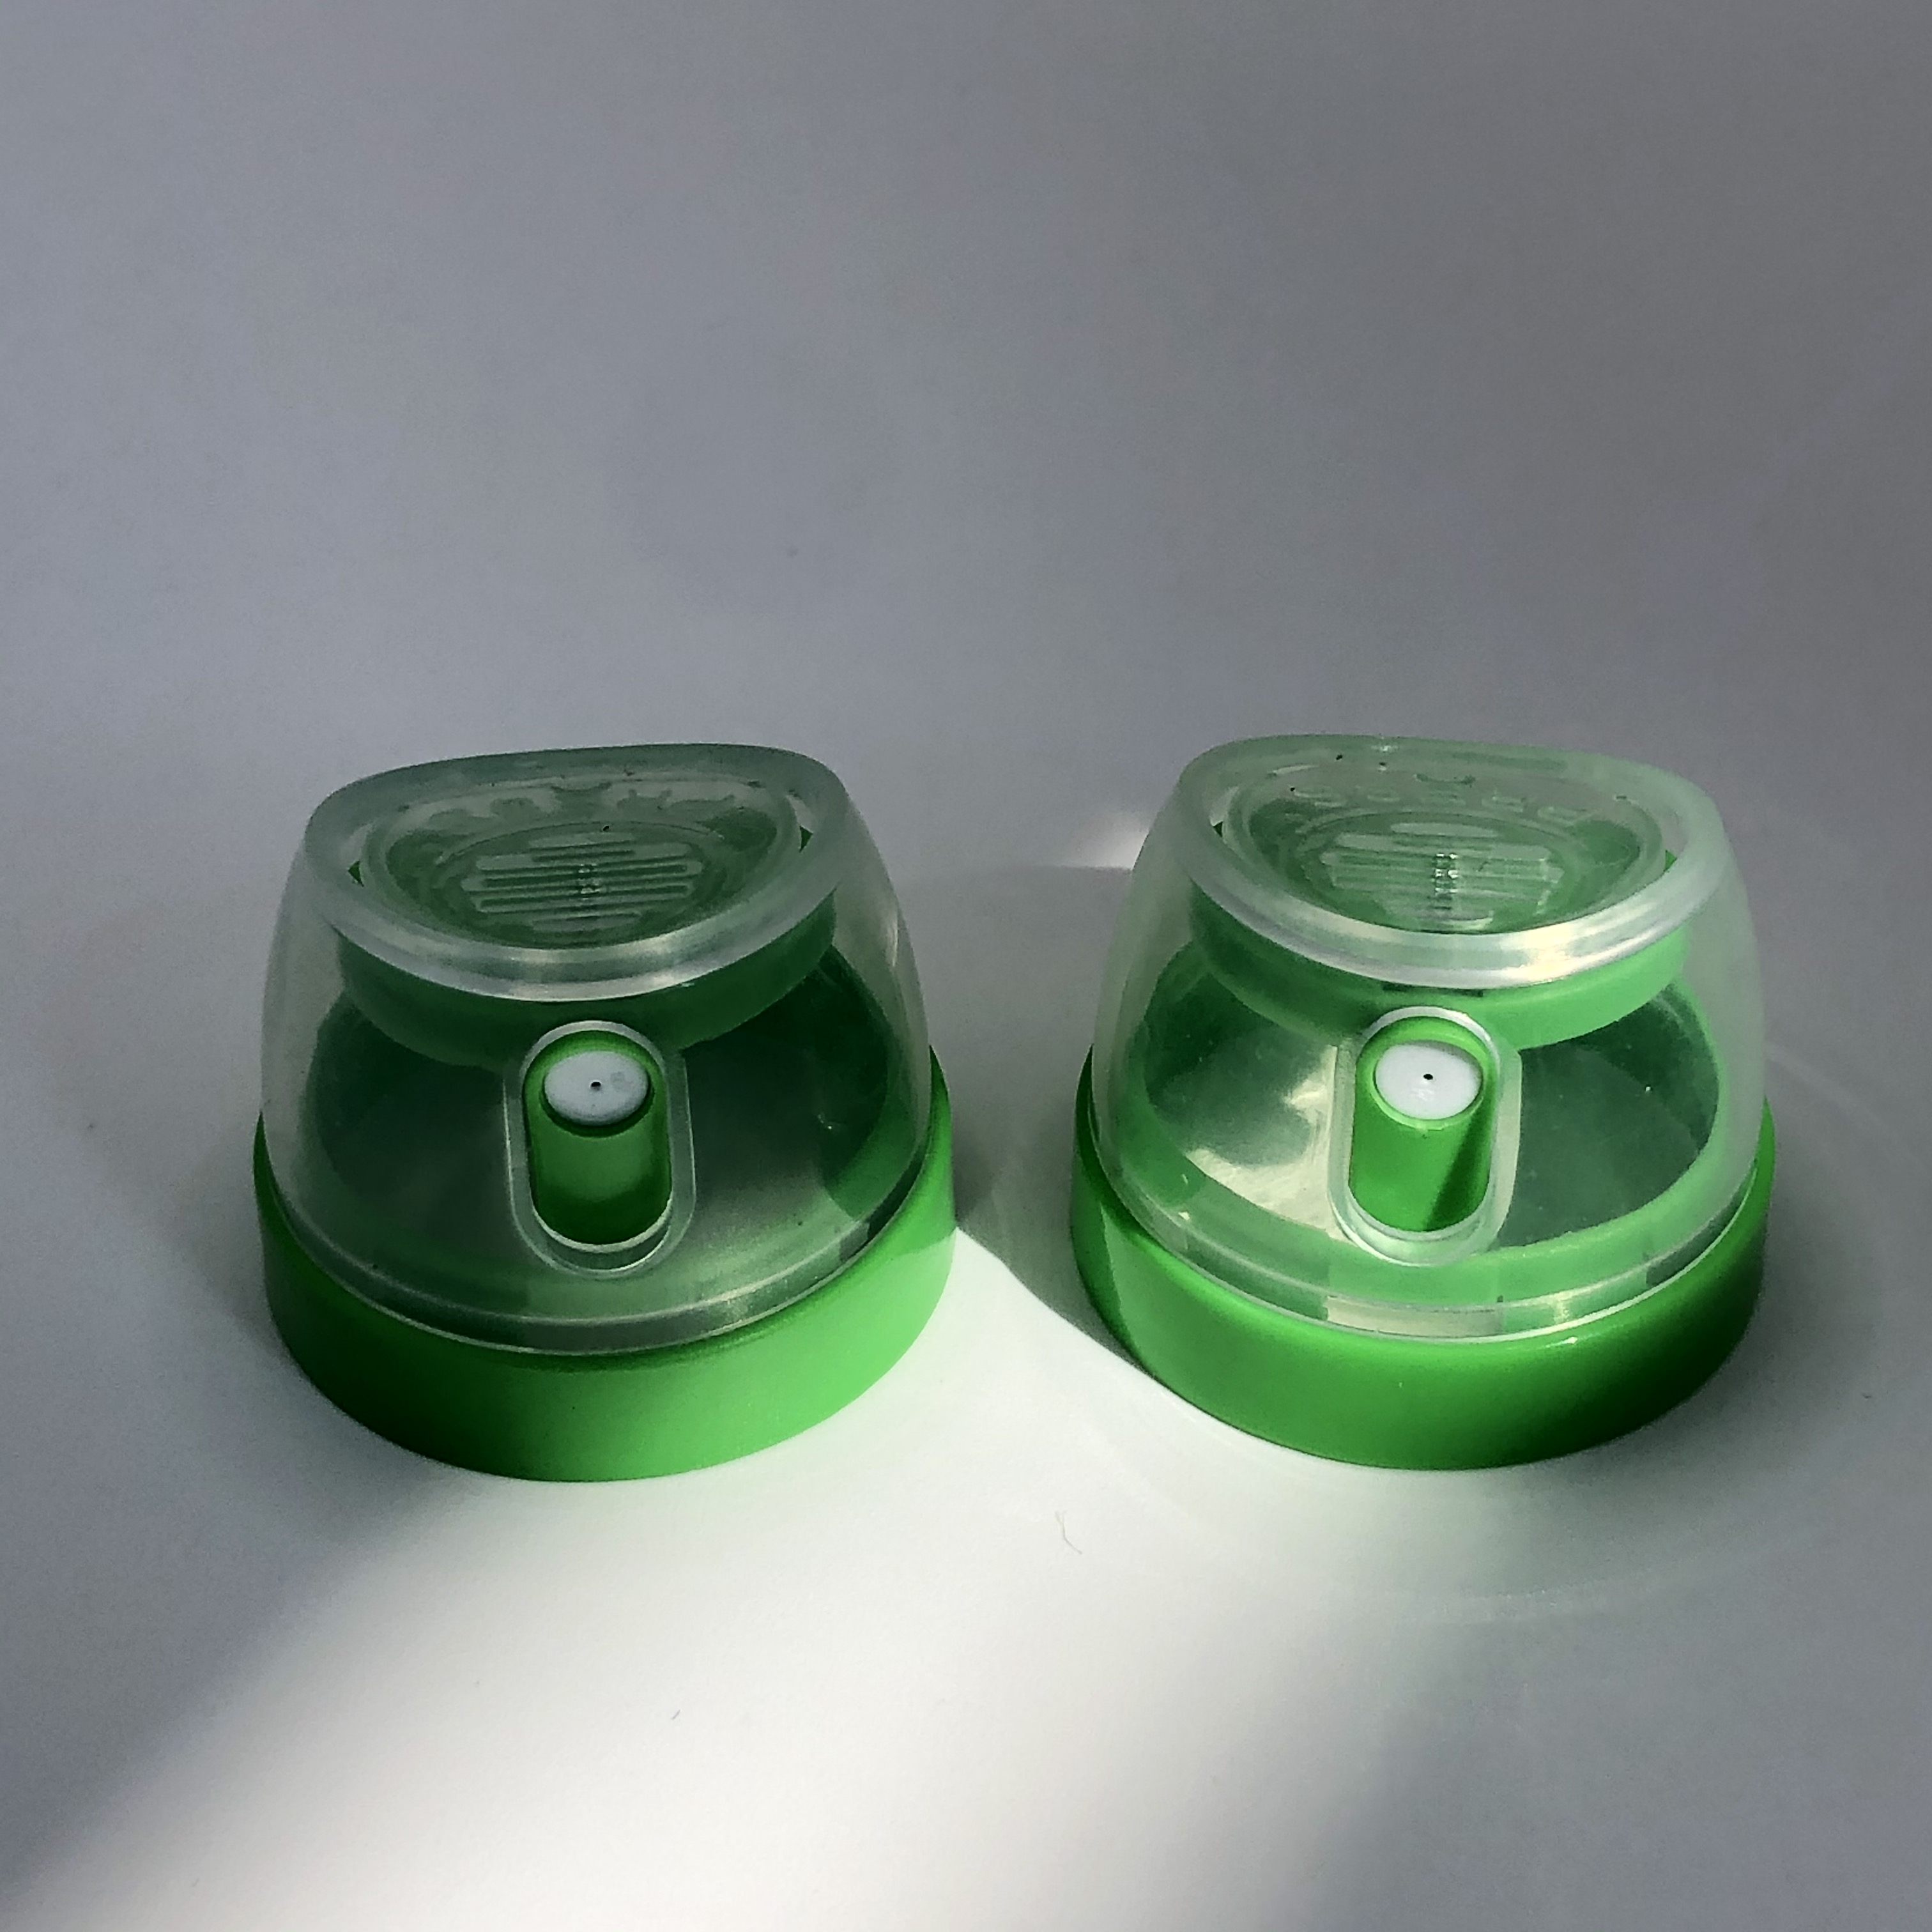 غطاء رذاذ الهباء الجوي آمن للأغذية-الحجم الخالي من BPA ، بحجم 35 ملم